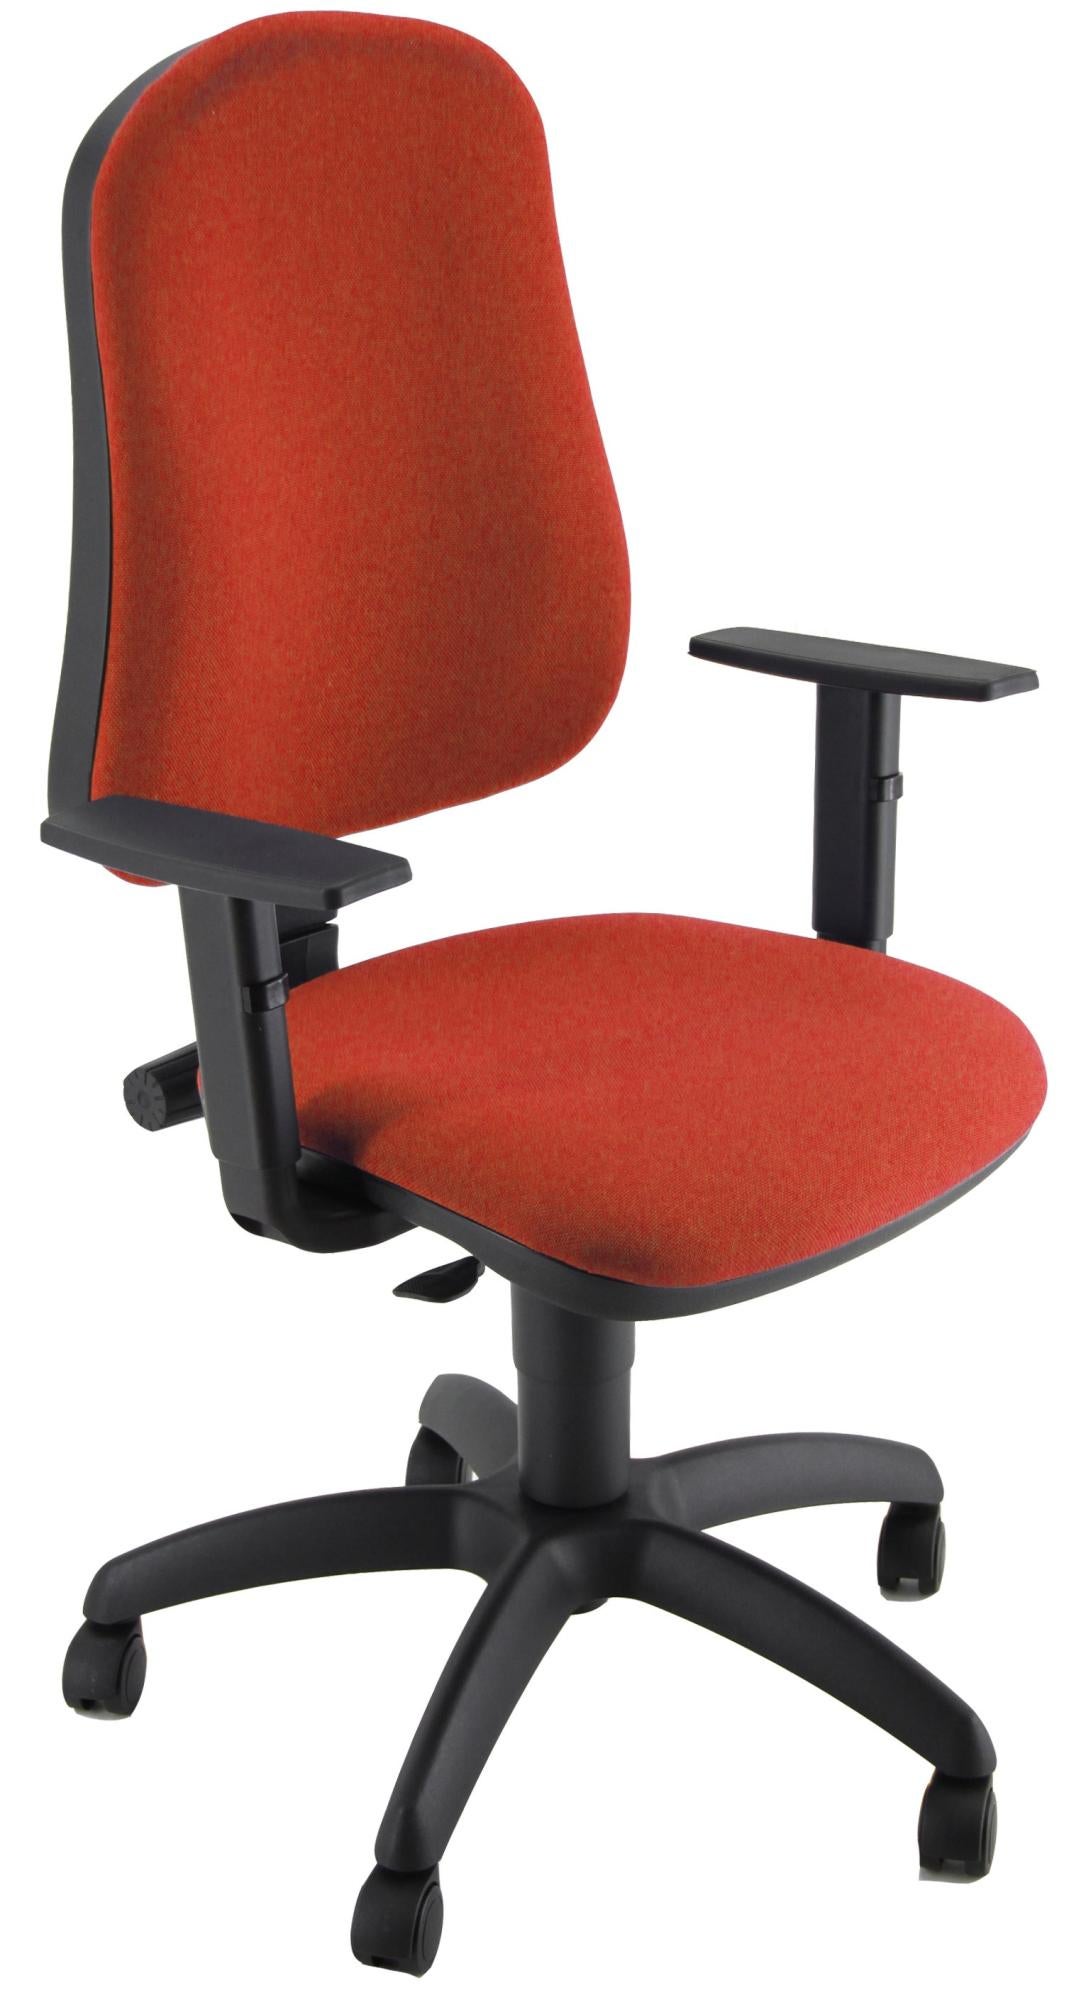 Silla de escritorio simpel color roja con reposabrazos ajustables